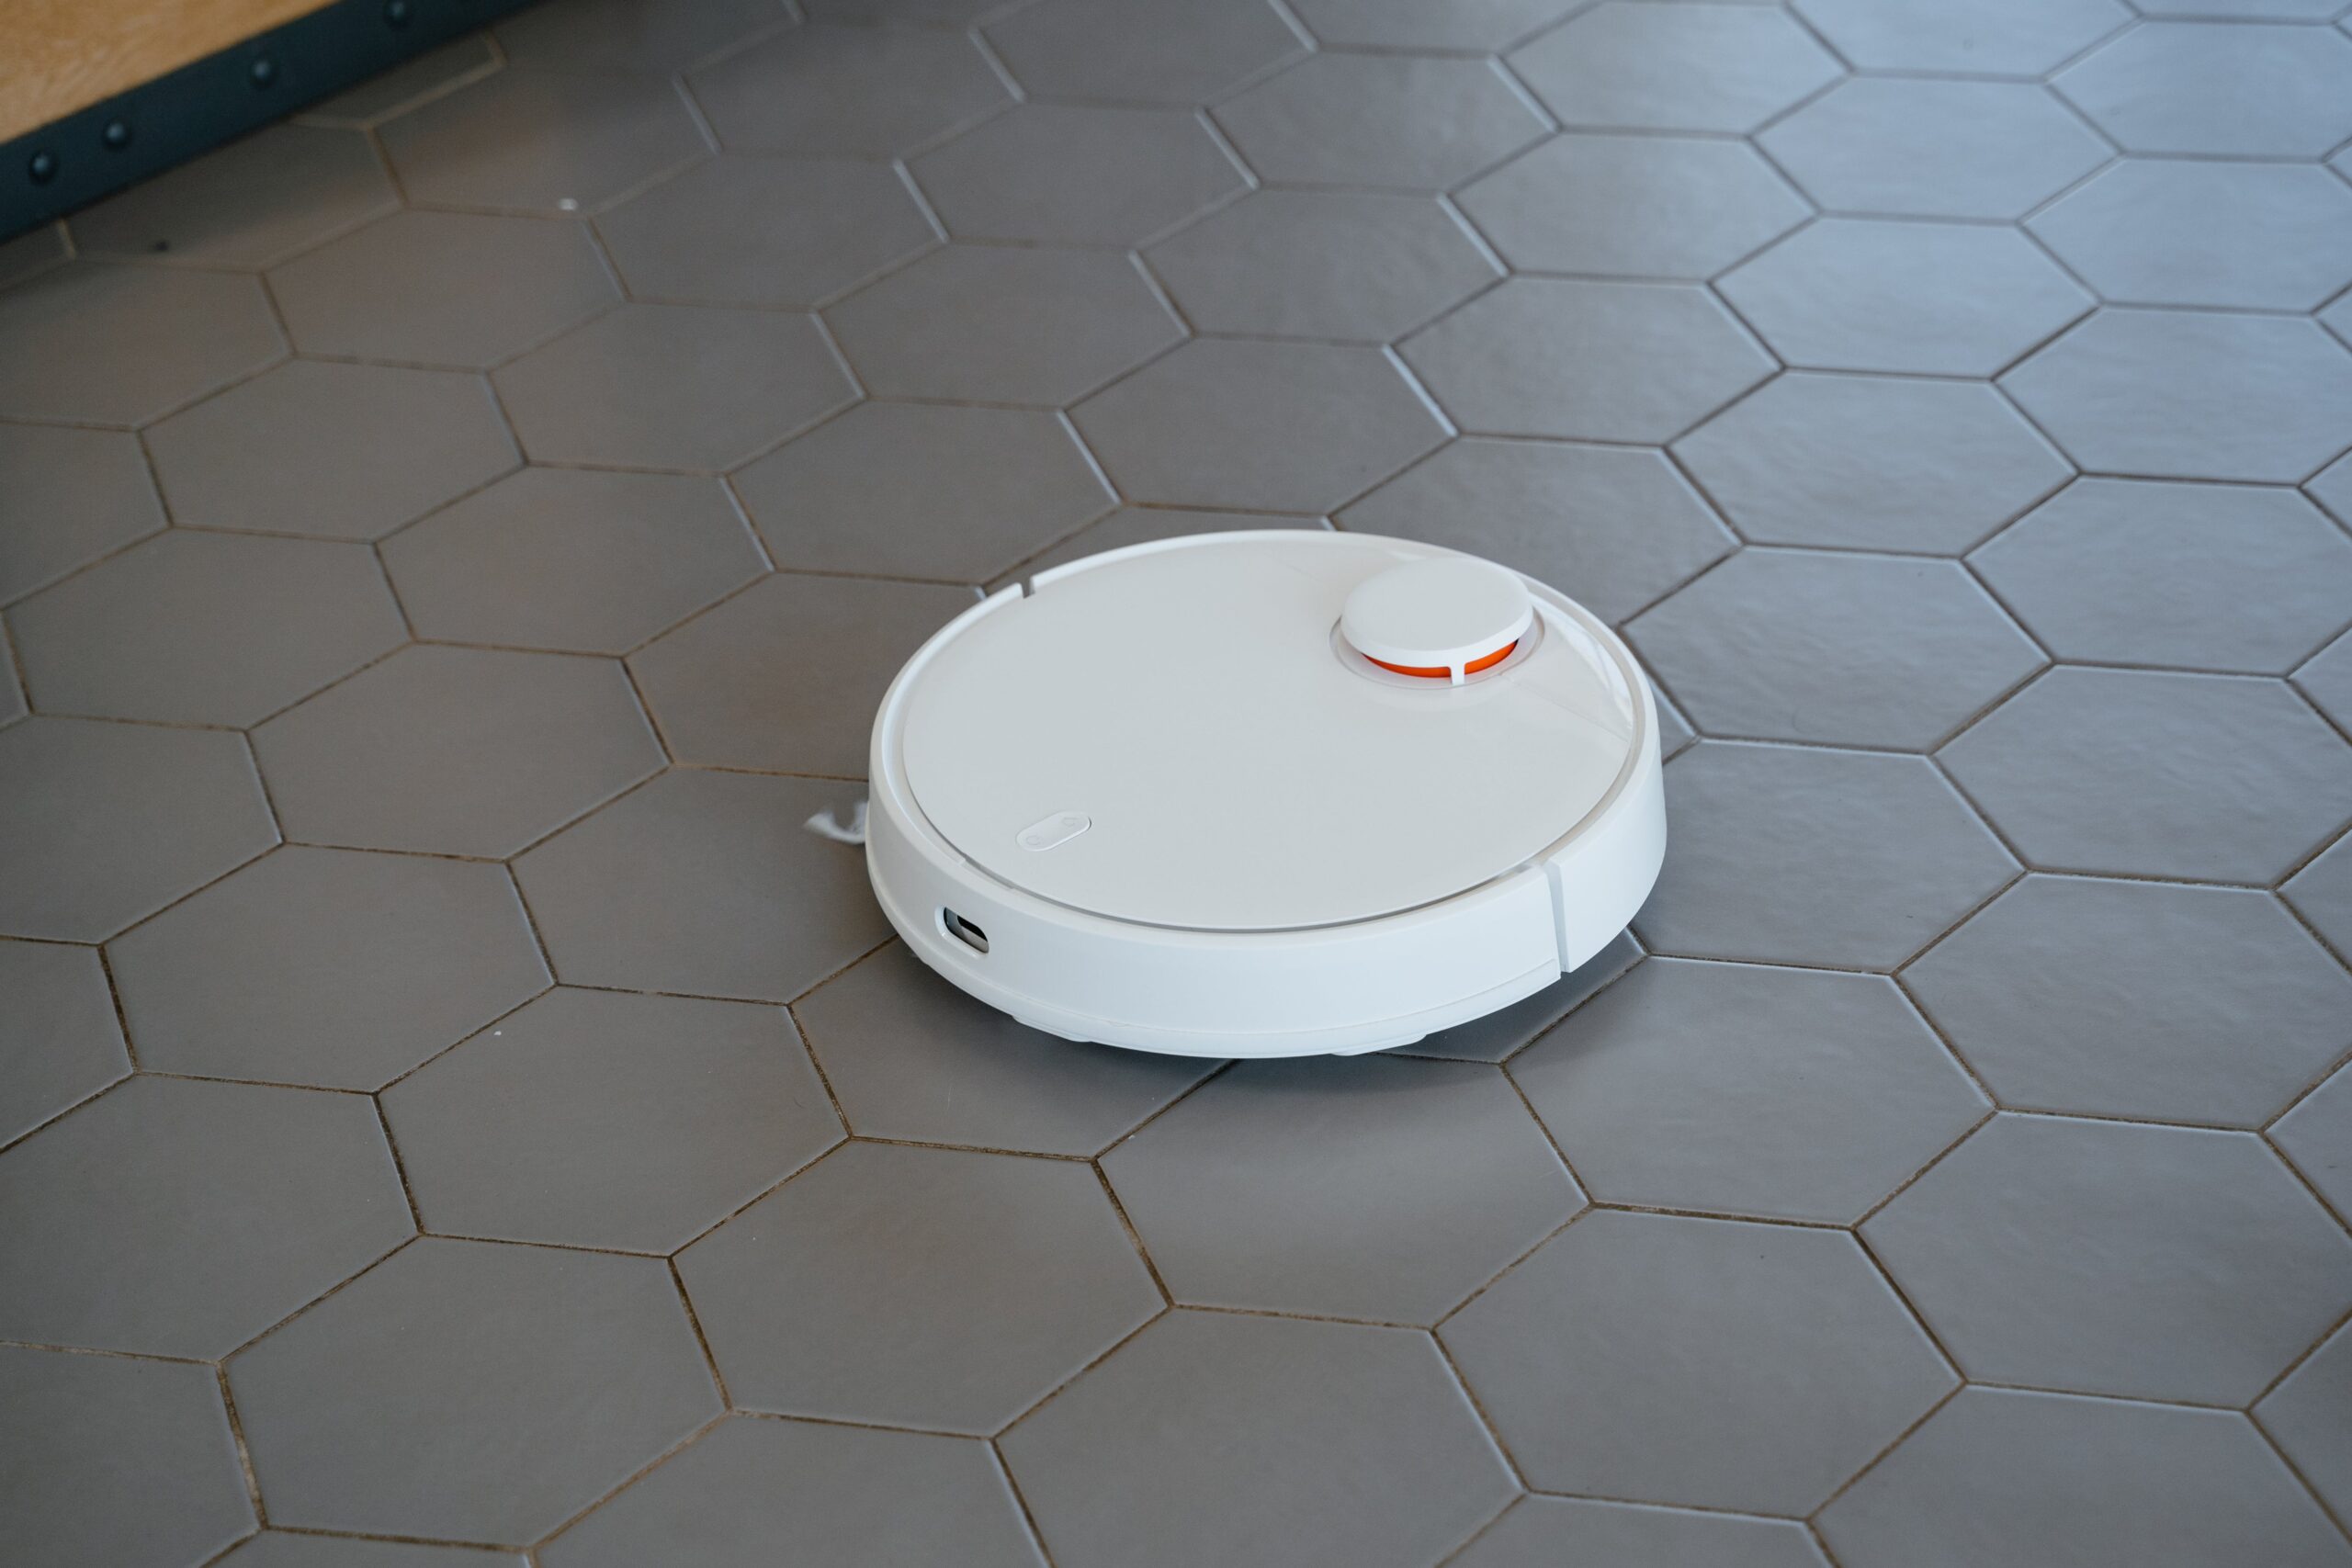 white round vacuum on gray tiles floor